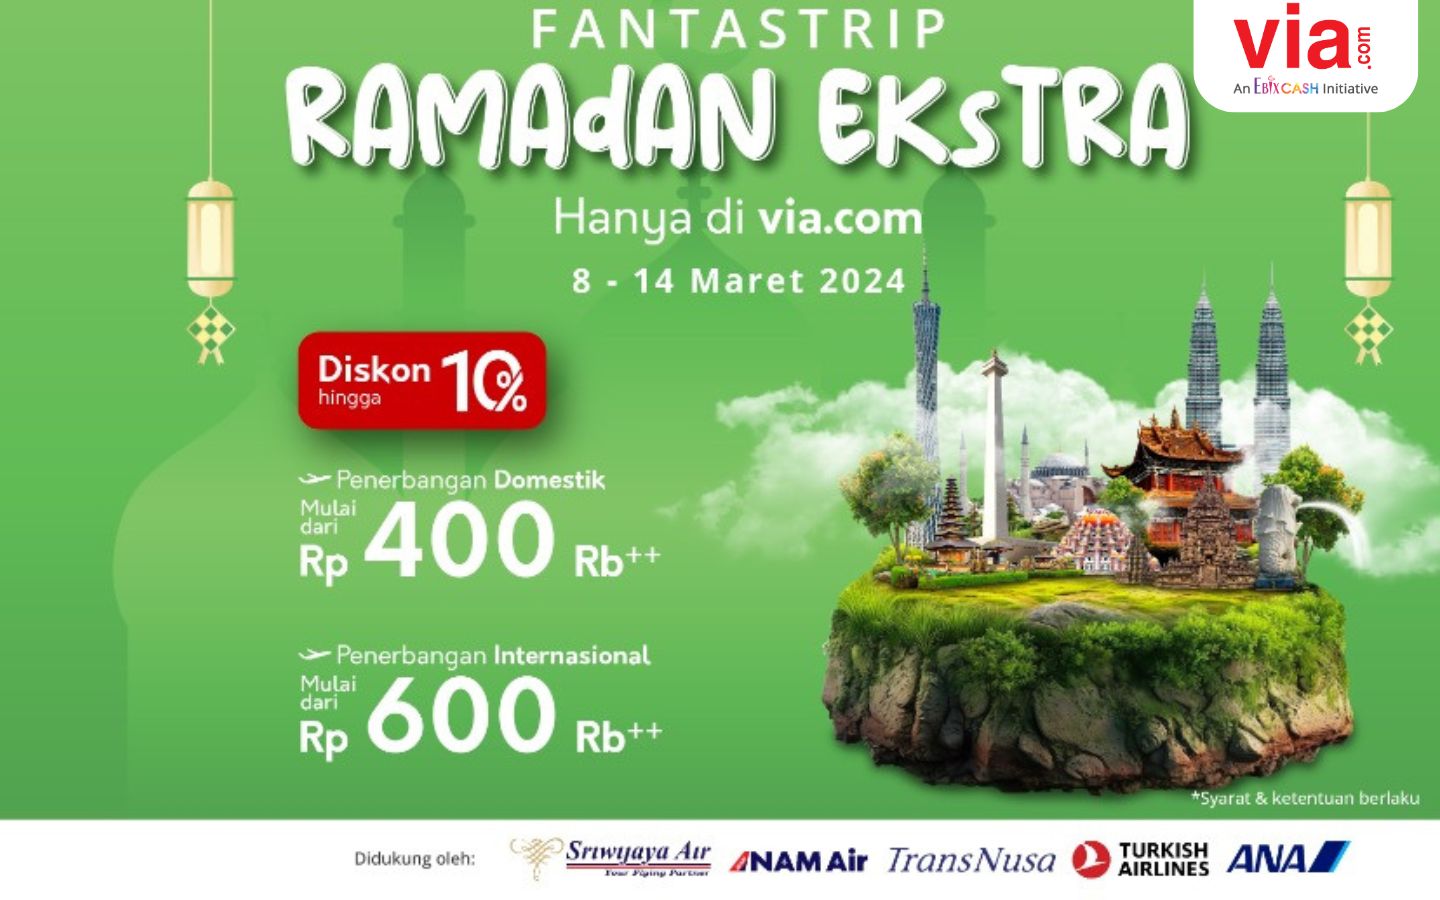 FantasTrip Ramadan Ekstra dari Via.com: Promo Menarik untuk Liburan Kamu!